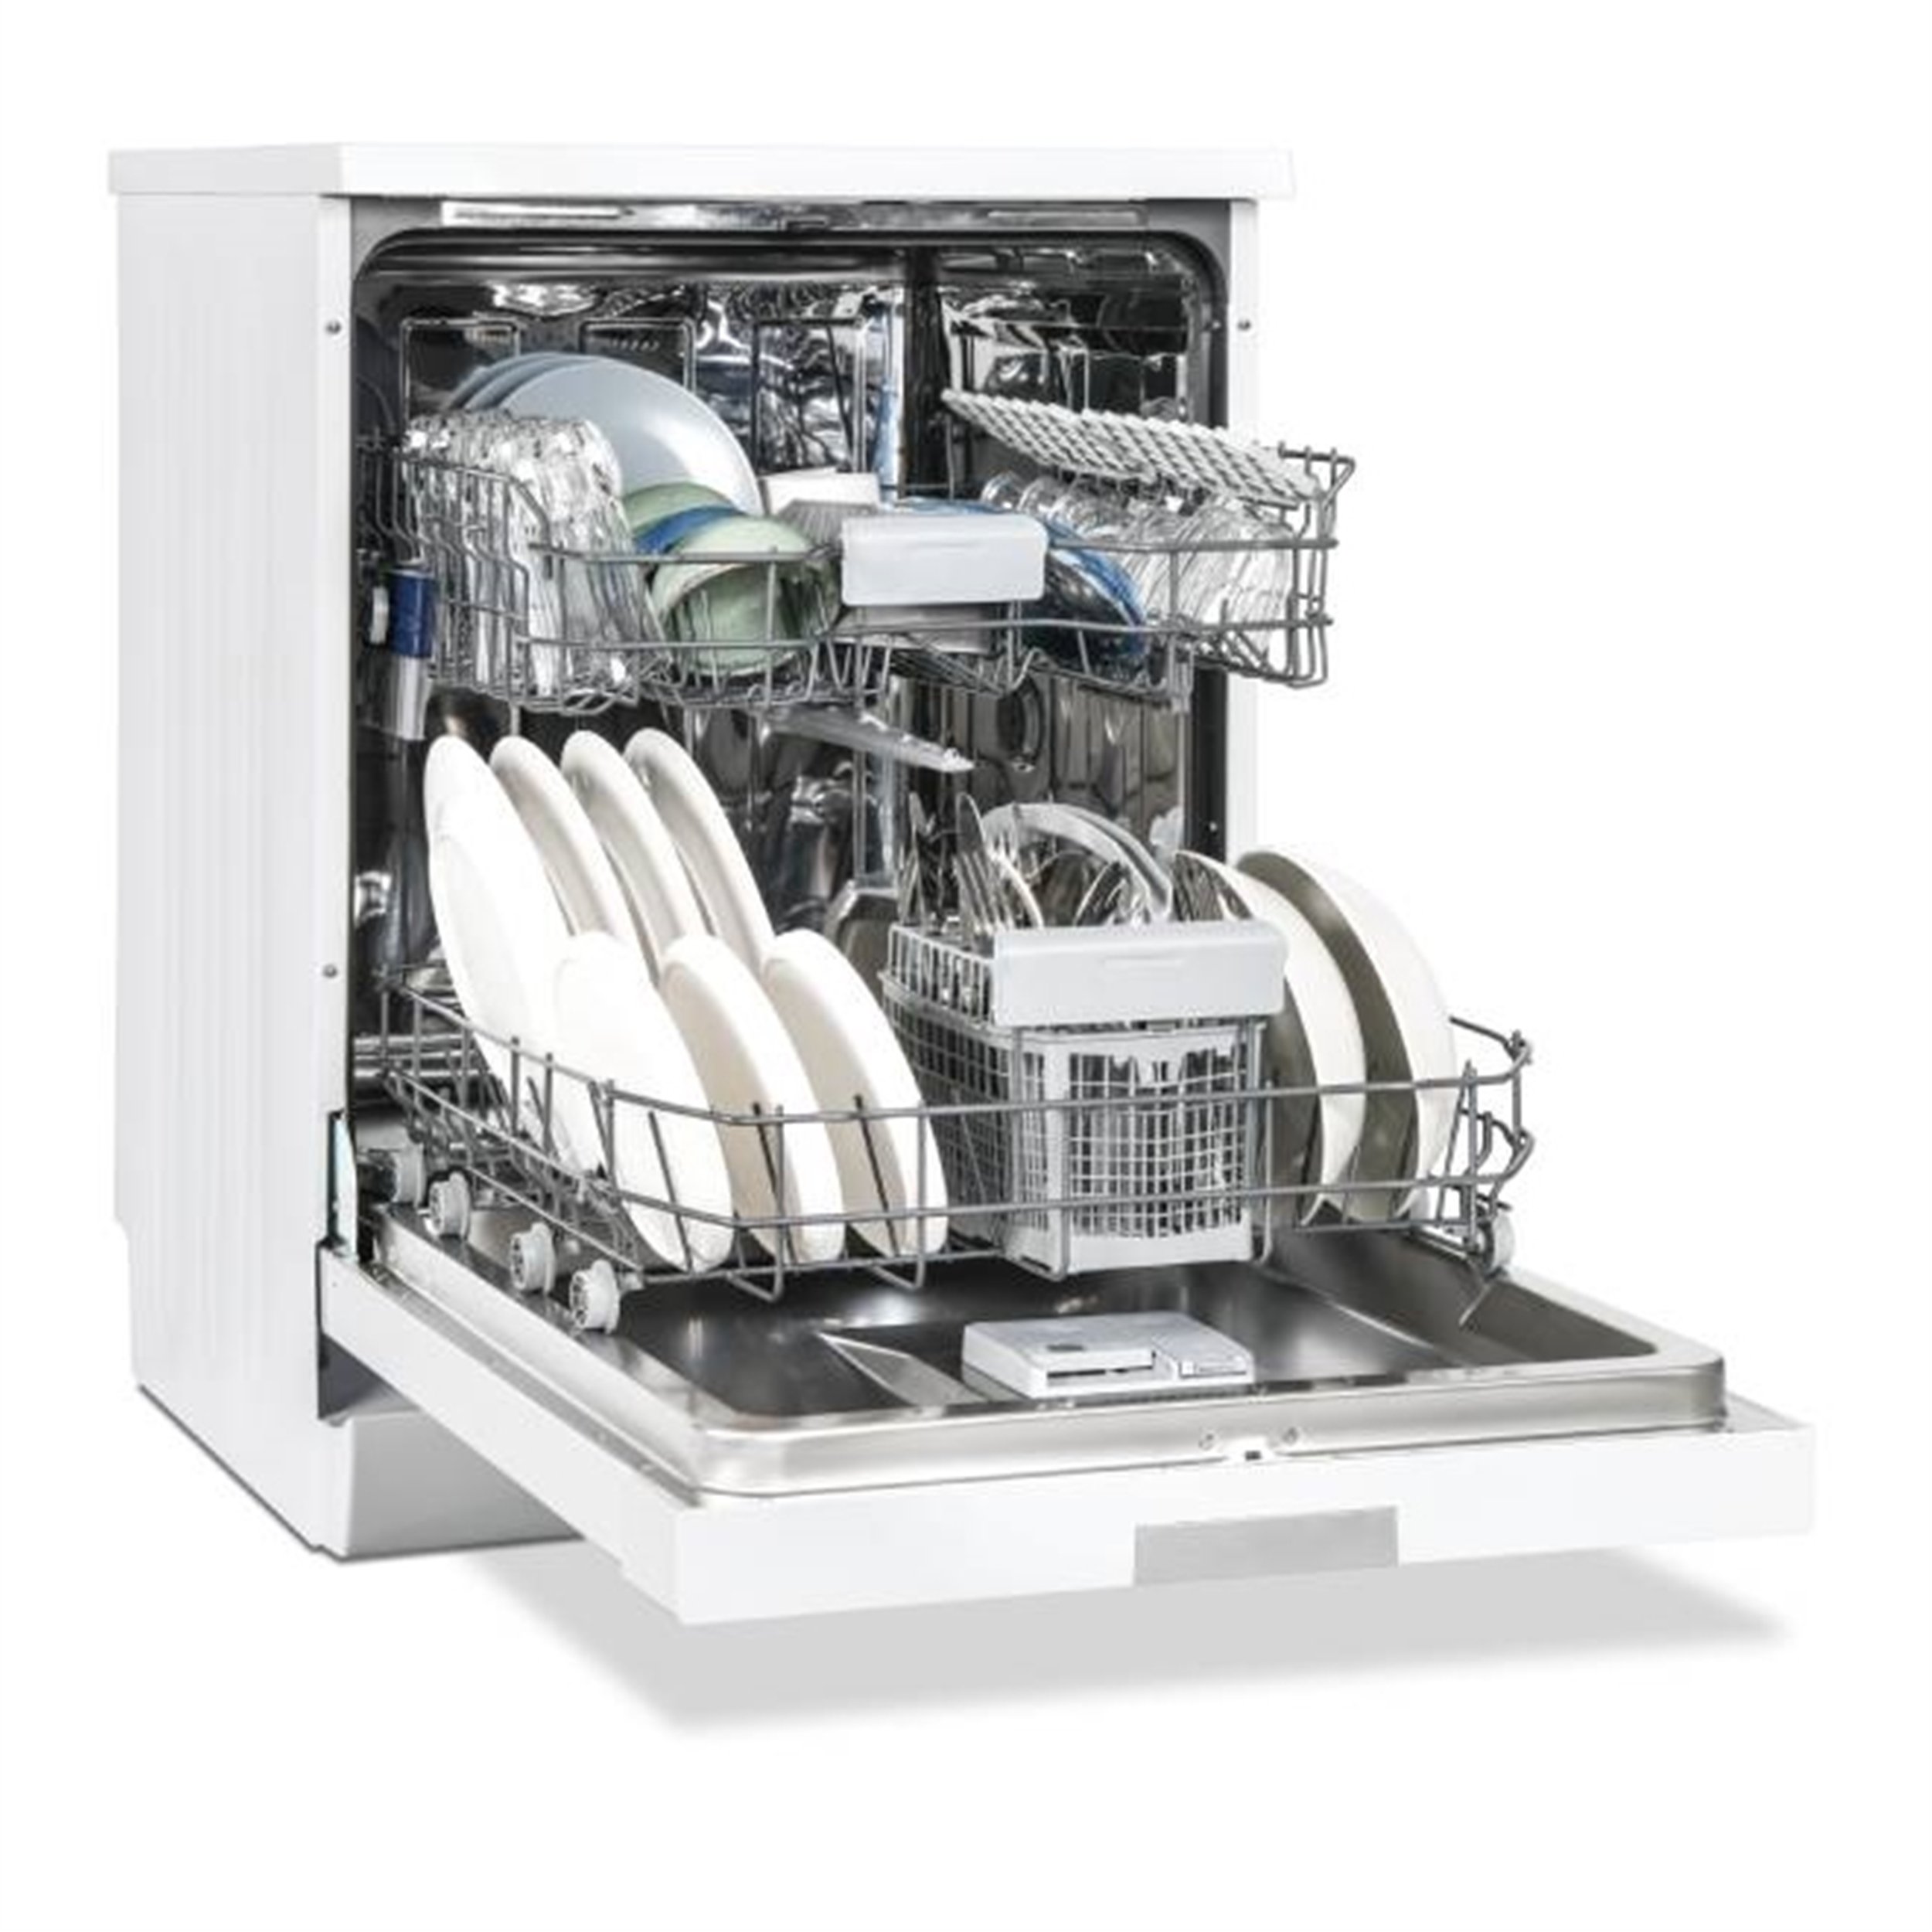 Regal BM 621 Y 6 Programlı Beyaz E Enerji Led Ekran Bulaşık Makinesi (REGAL.20265008)  | Afeks Yapı Market